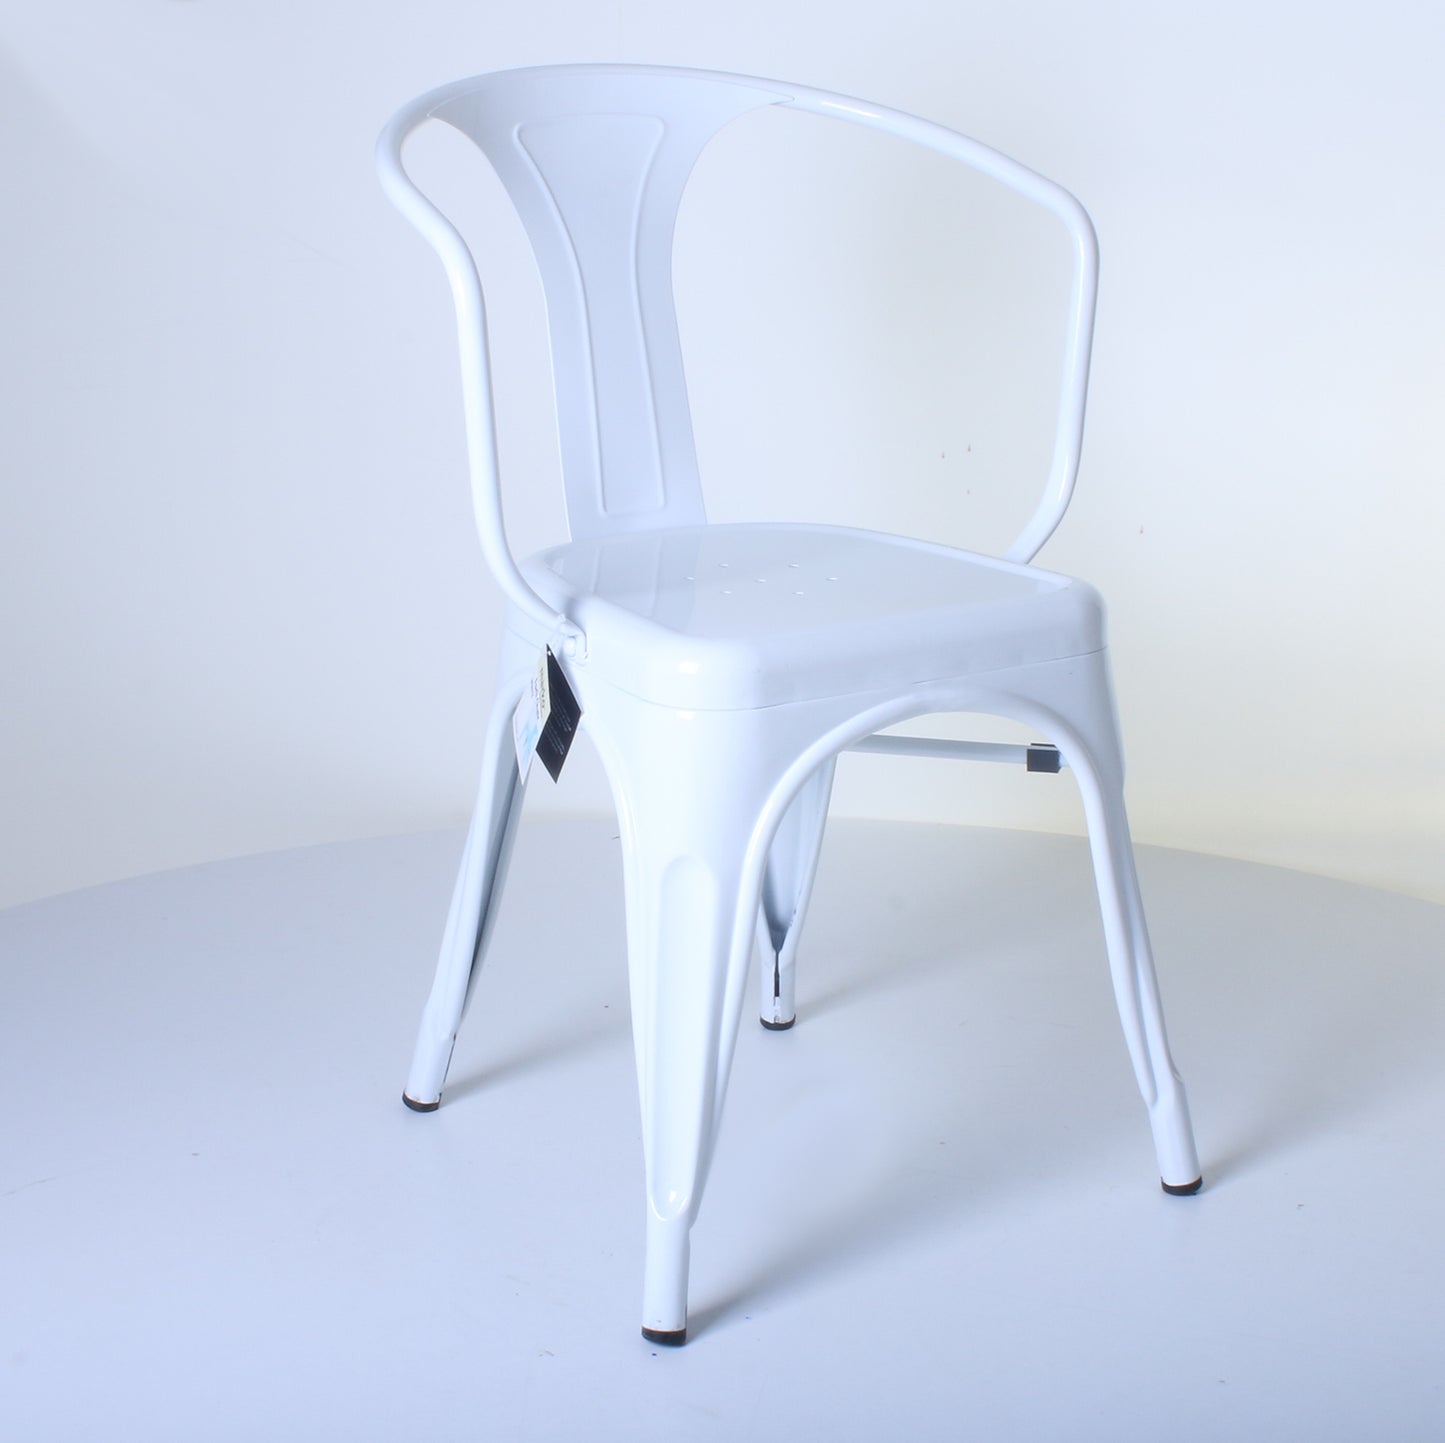 7PC Prato Table, 4 Forli Chairs & 2 Castel Stools Set - White